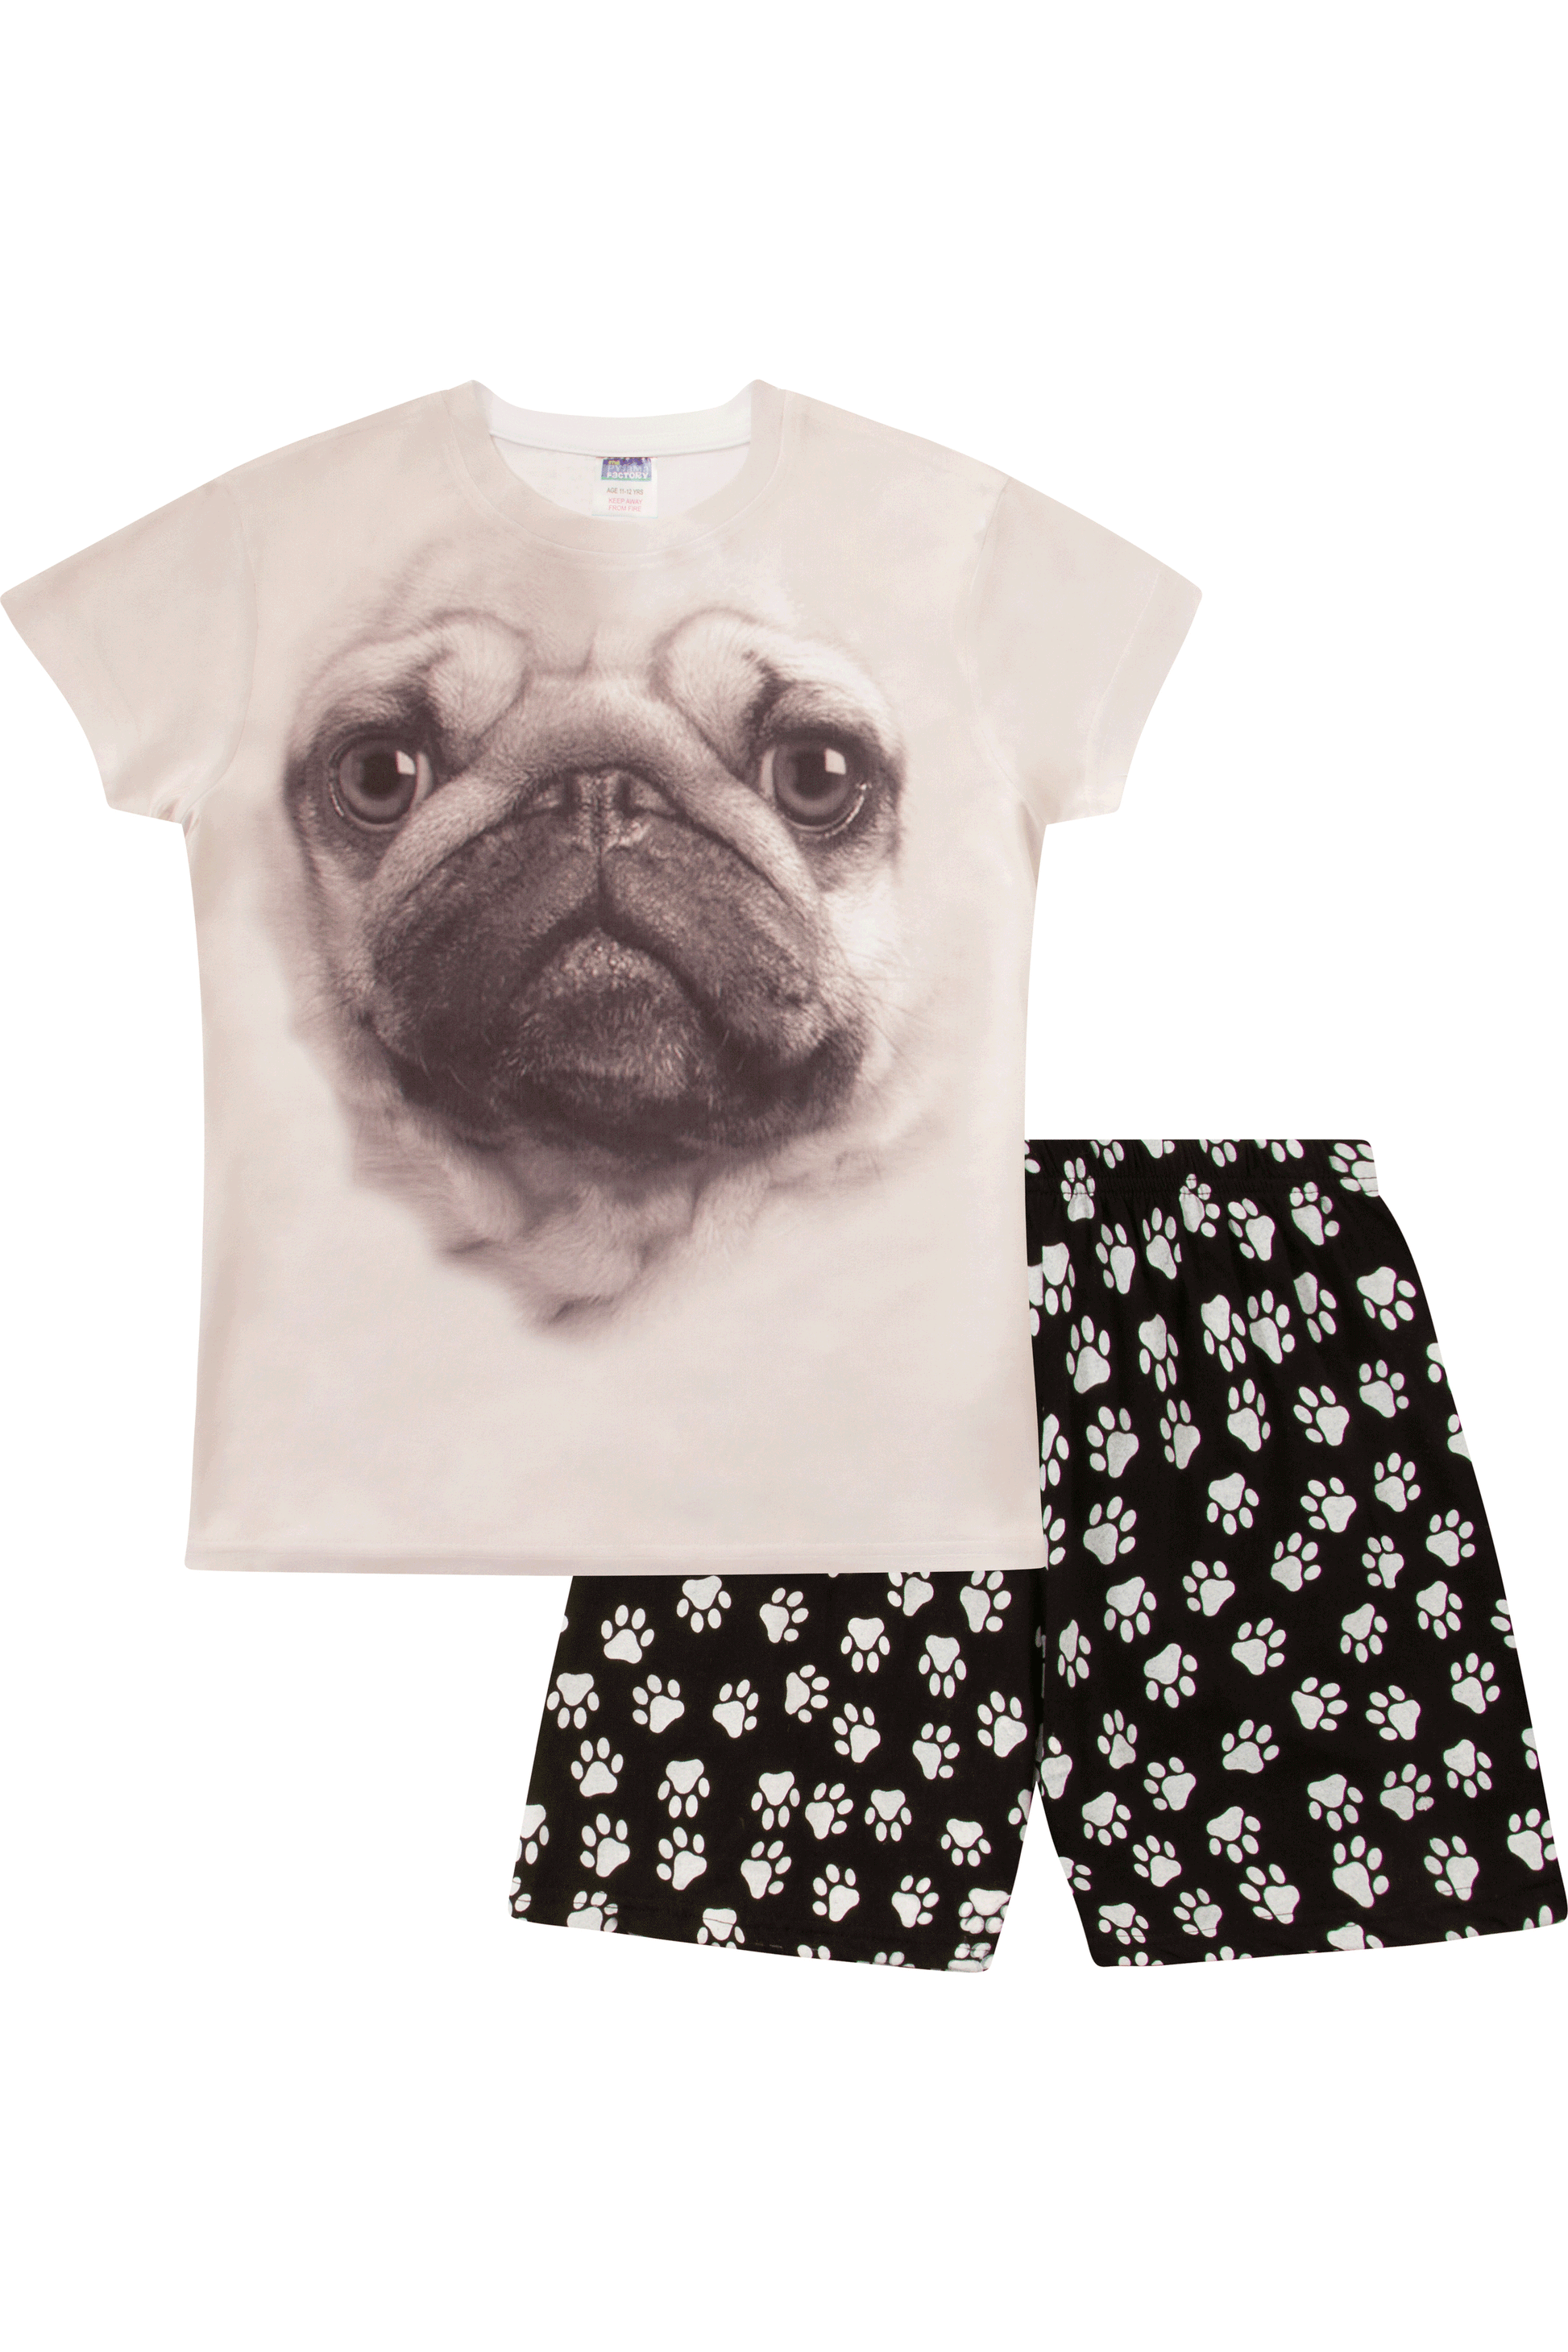 3D Pug Short Pyjamas - Pyjamas.com